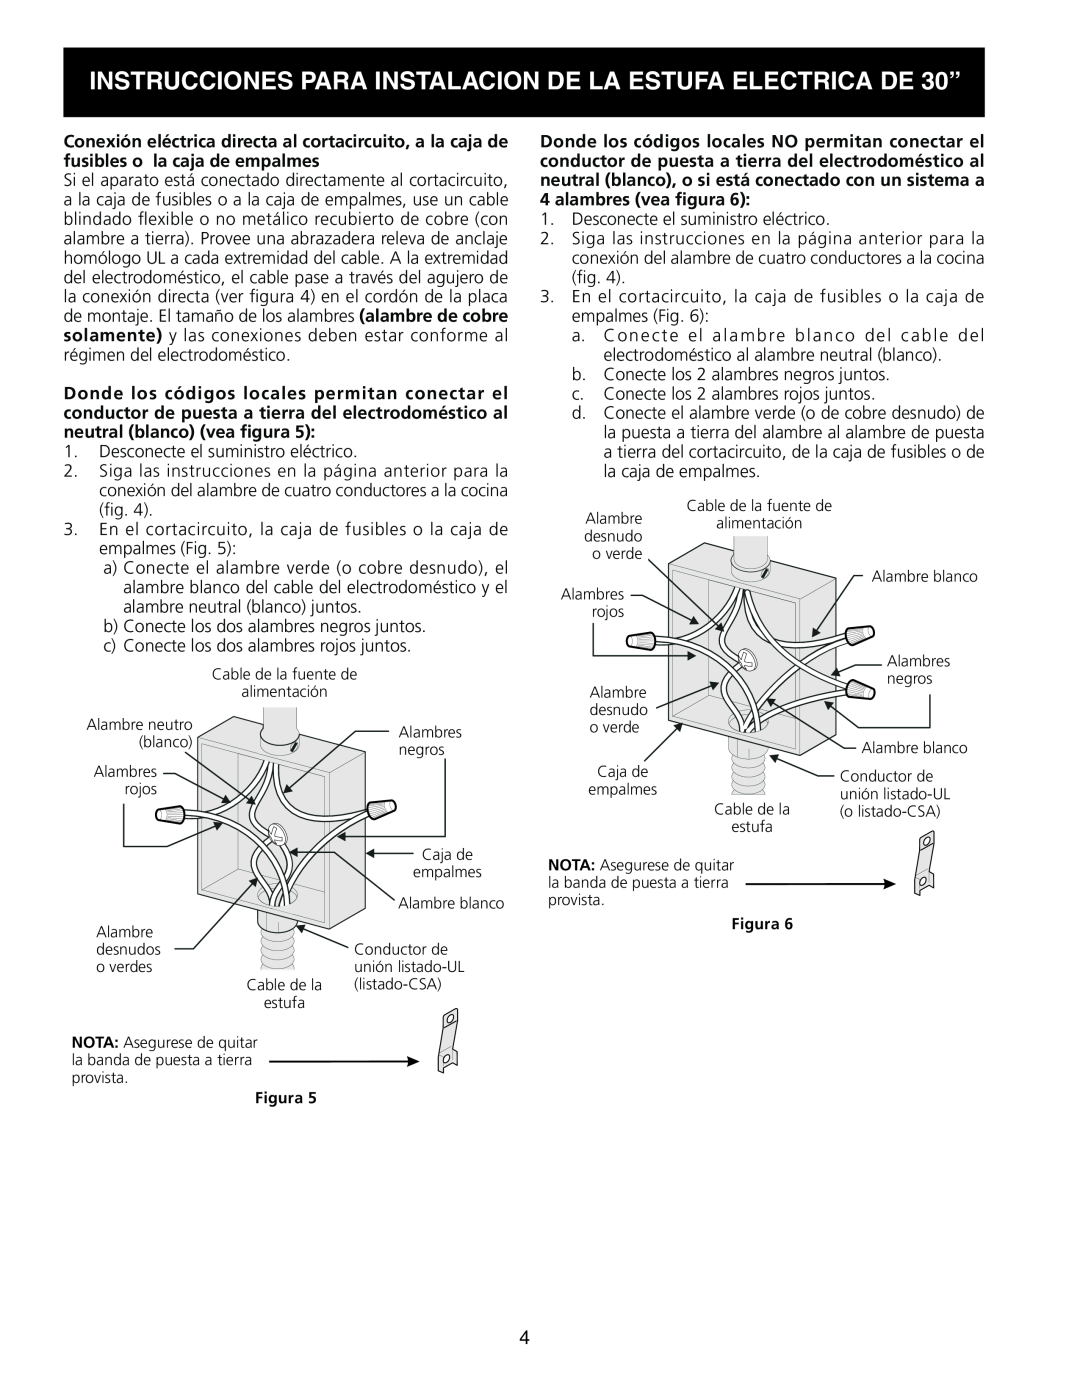 Frigidaire 318201724 manual INSTRUCCIONES PARA INSTALACION DE LA ESTUFA ELECTRICA DE 30”, alambres vea figura 